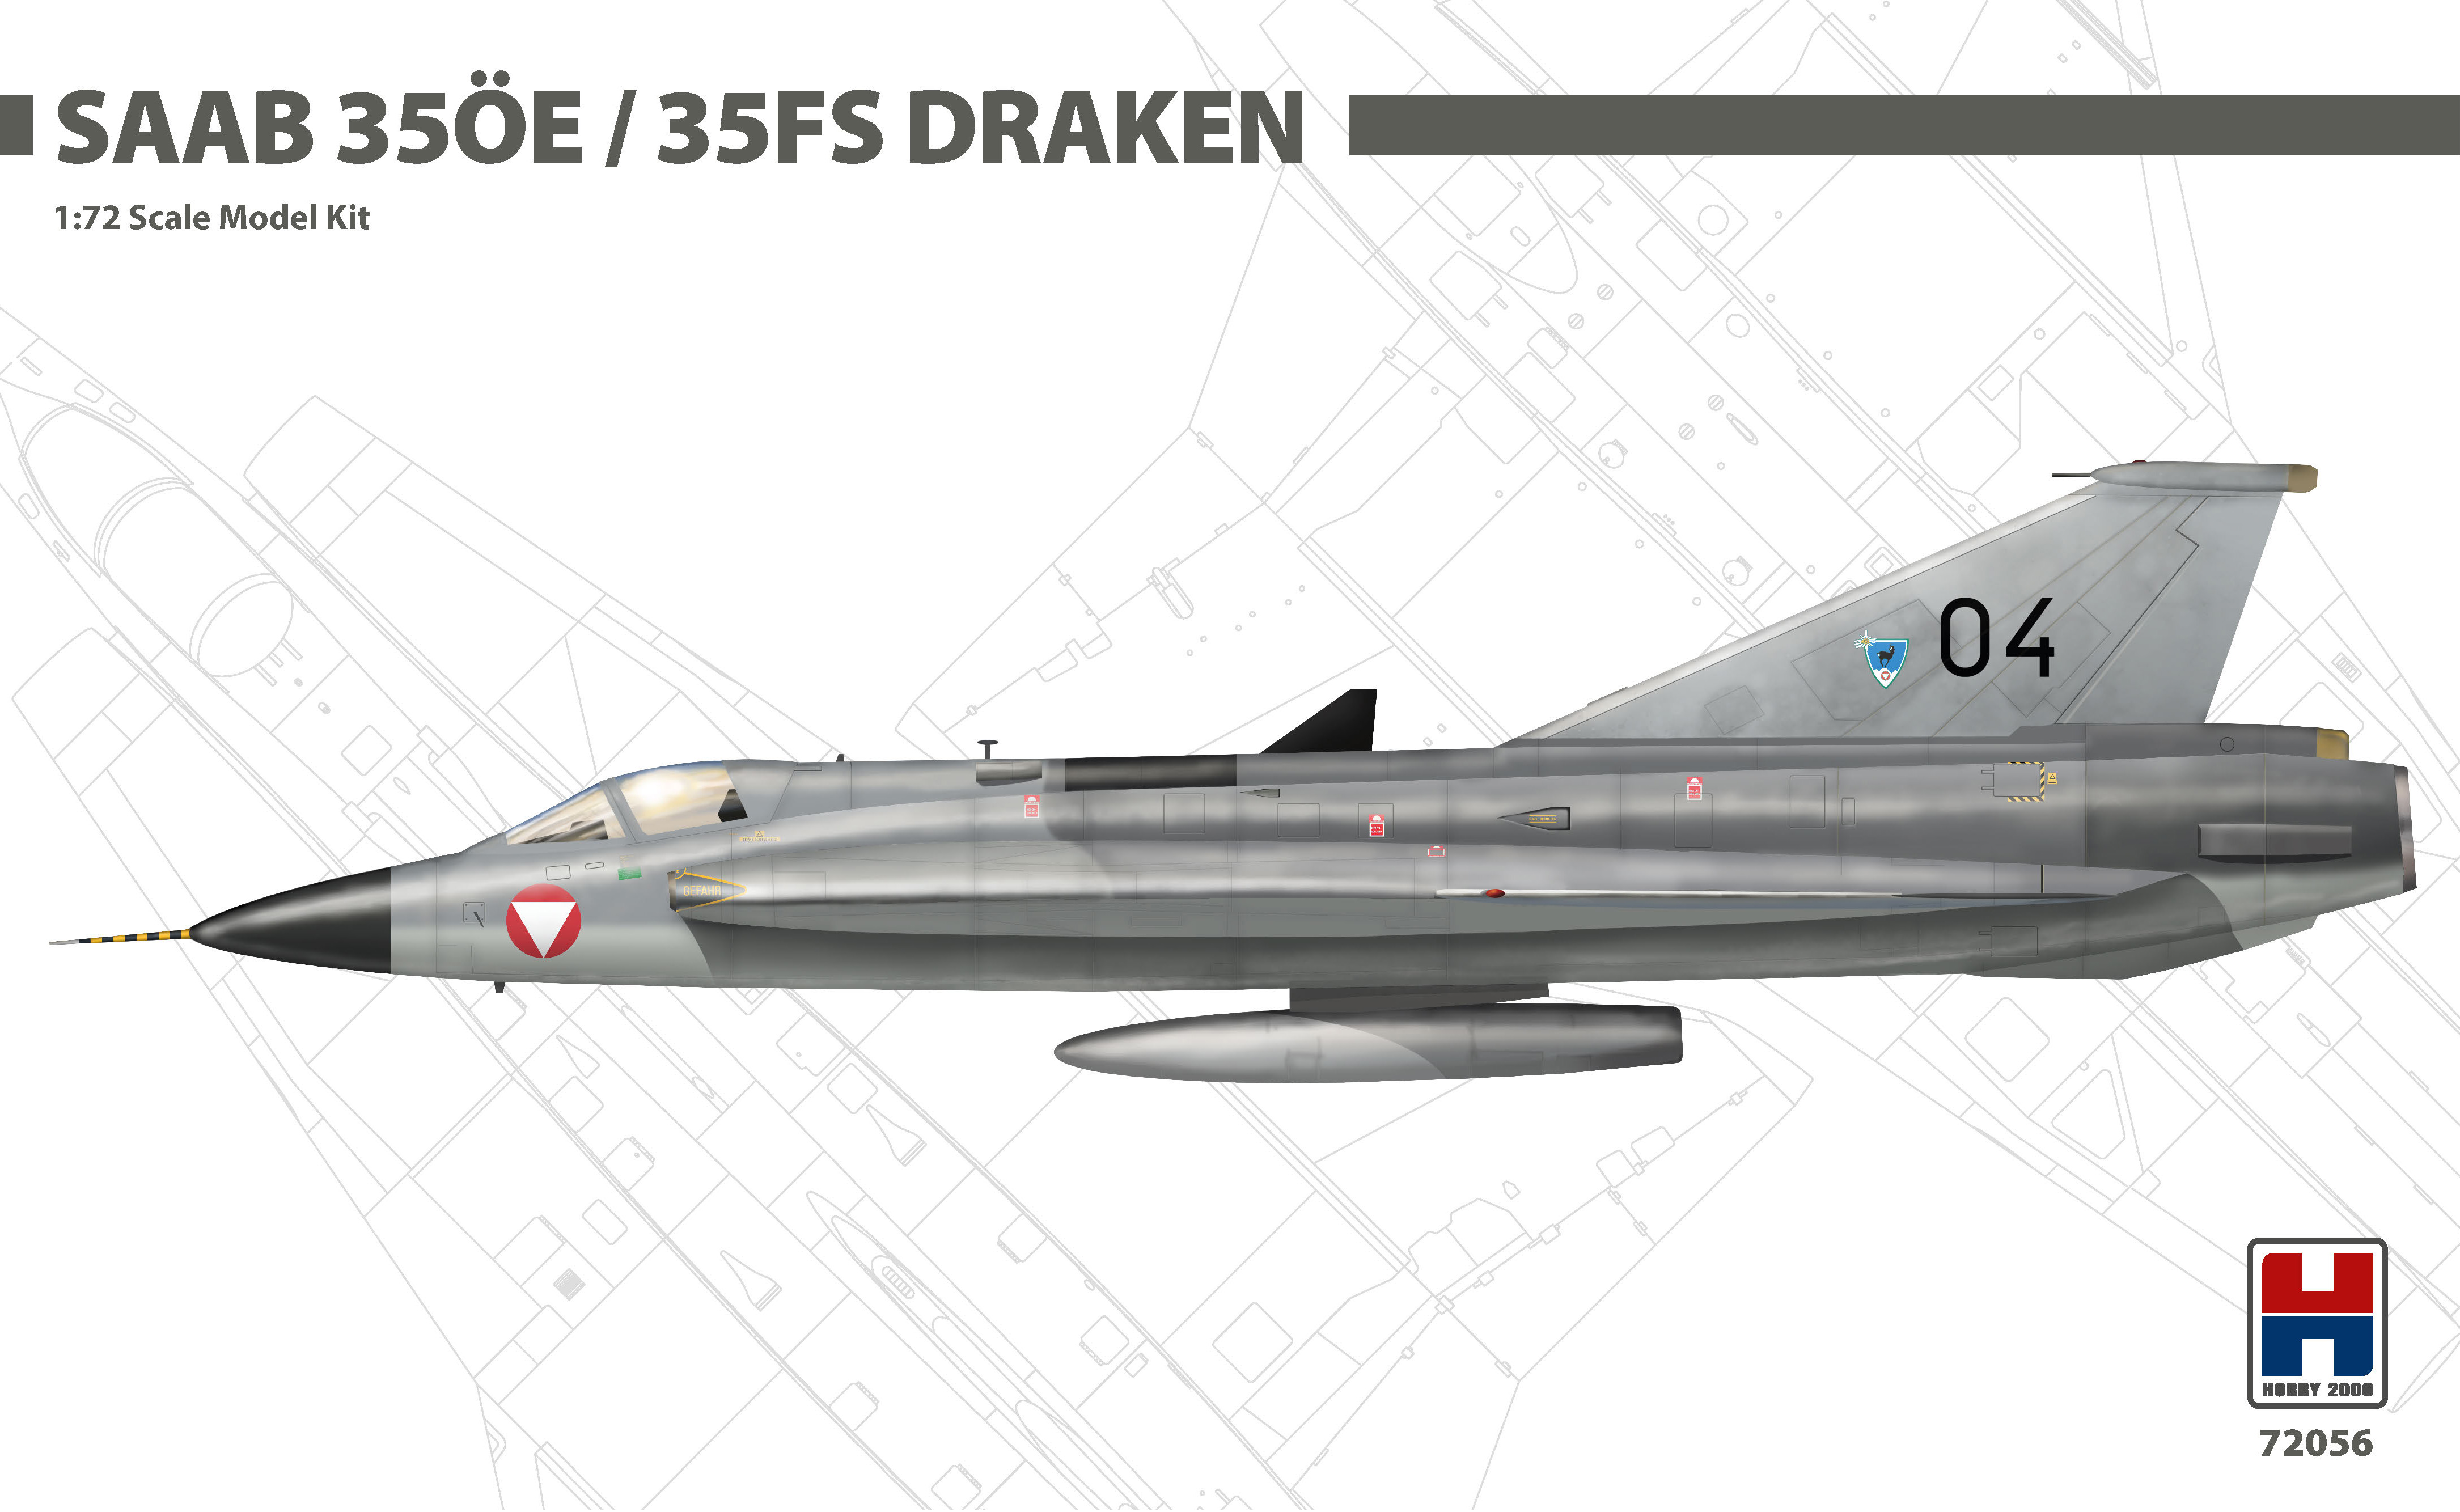 1/72 Saab 35ÖE/35FS Draken (HASEGAWA + CARTOGRAF + MASKY)